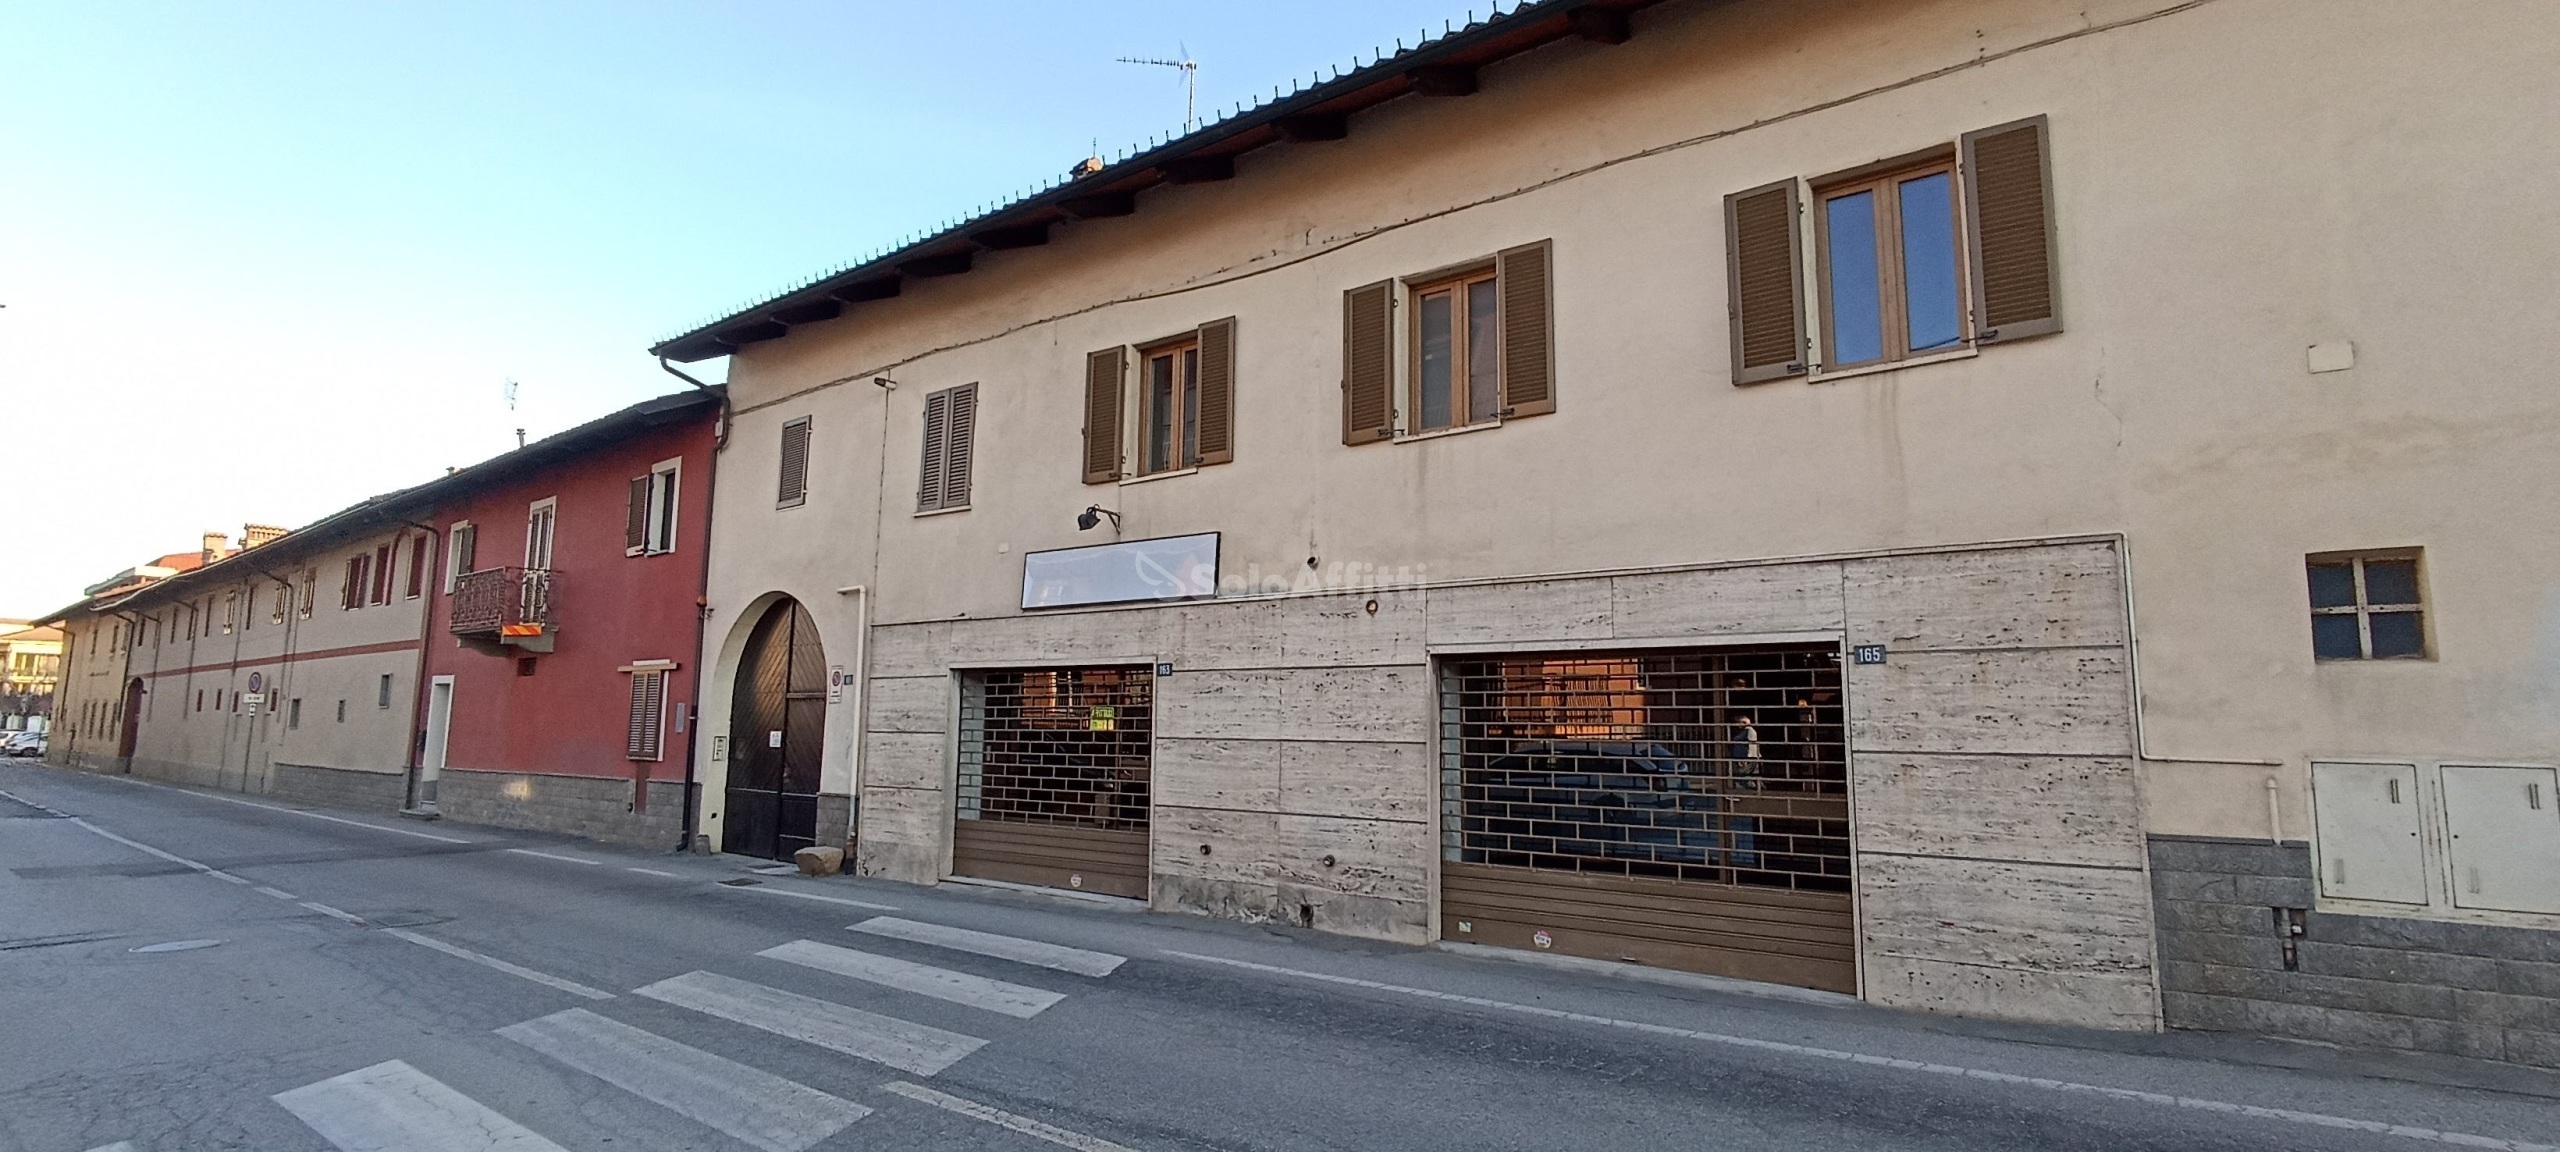 Locale commerciale in affitto in via roma 163, Airasca